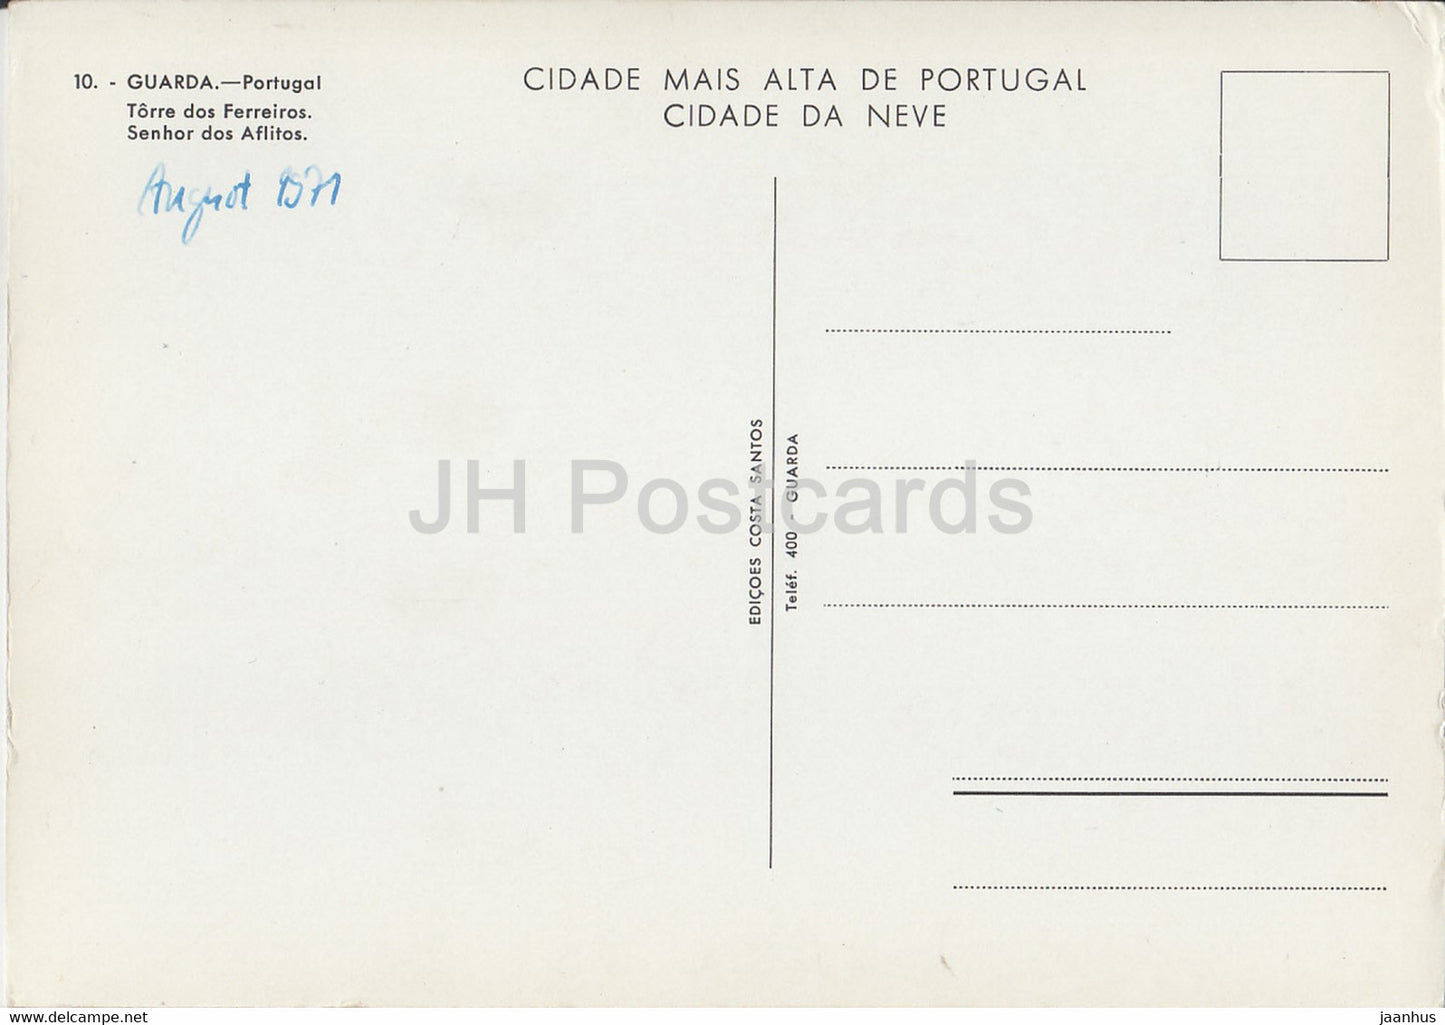 Guarda - Torre dos Ferreiros - Senhor dos Aflitos - 10 - 1971 - Portugal - gebraucht